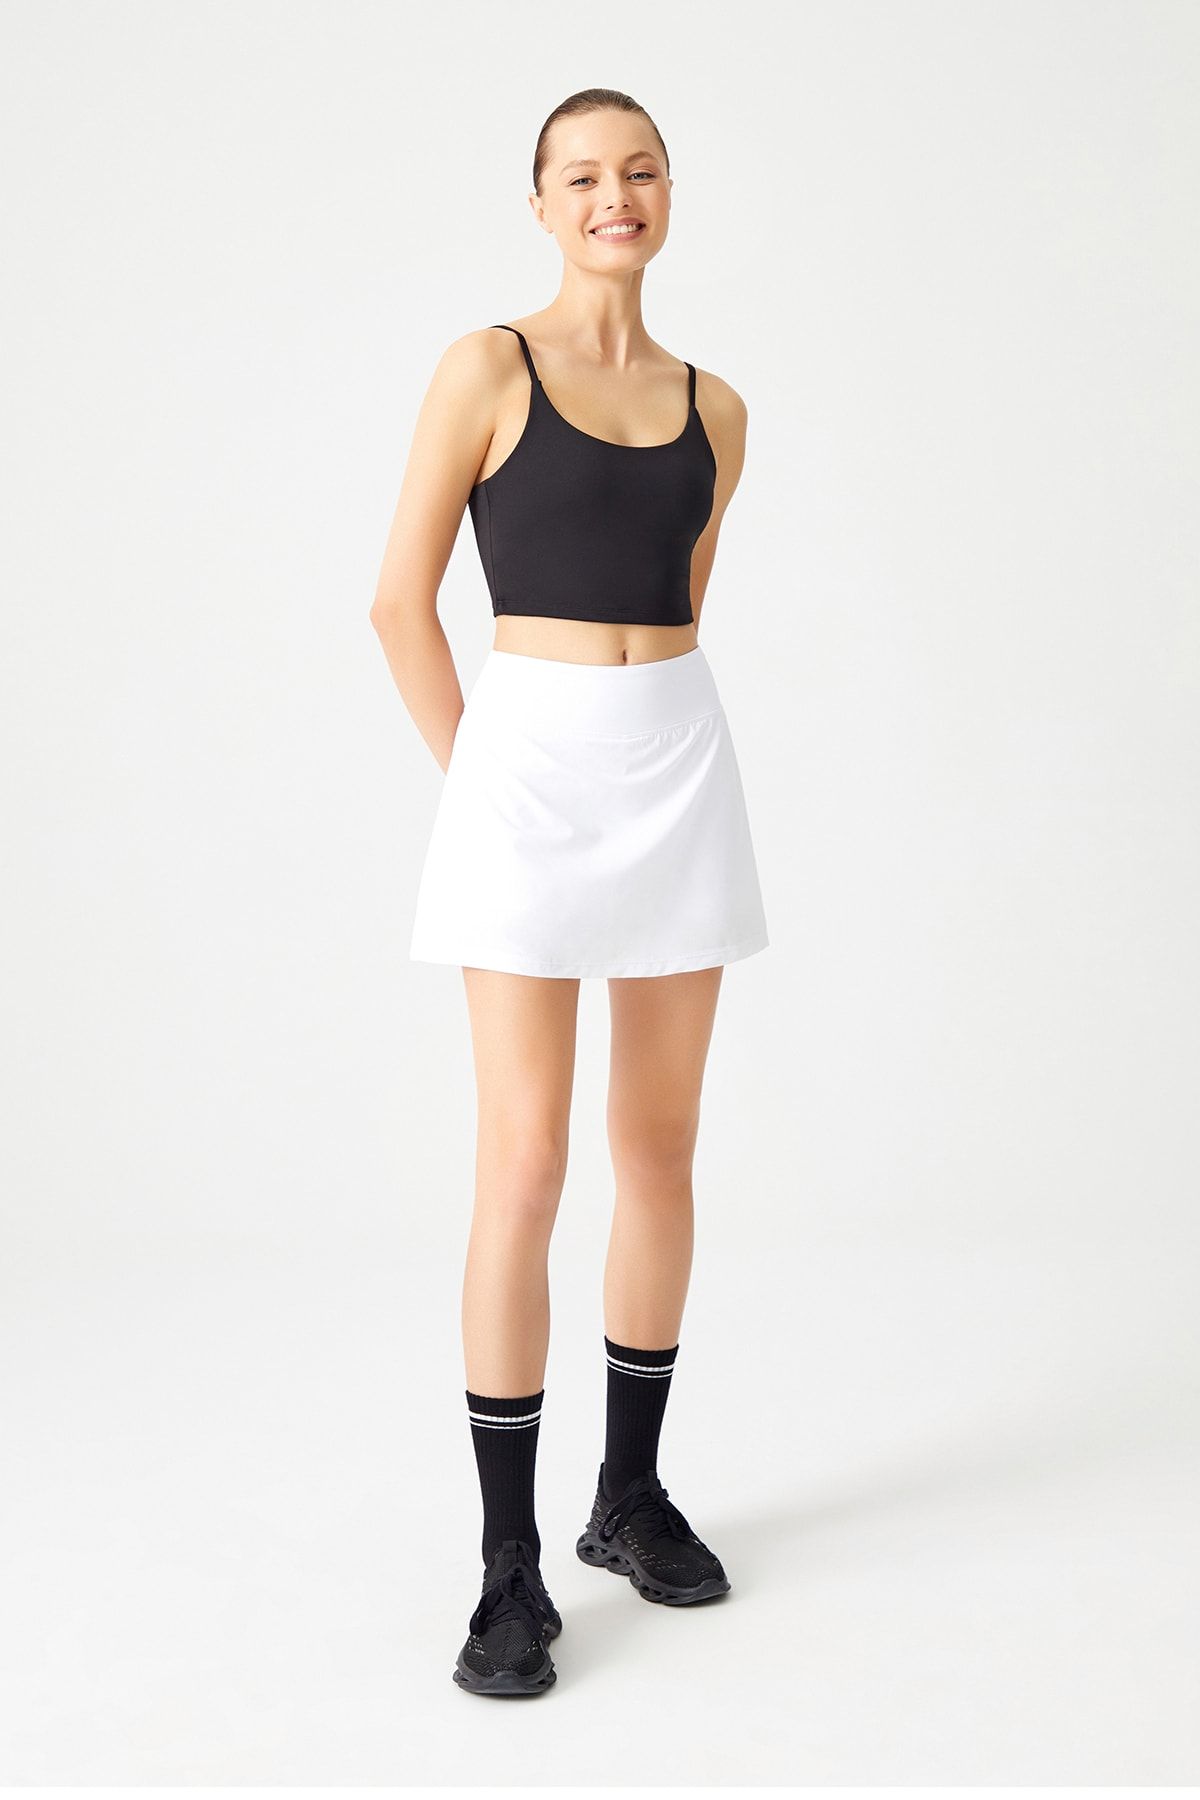 LOS OJOS Beyaz 2 Katmanlı Tenis Eteği - Şort Etek - Spor Etek Tennis Skirt